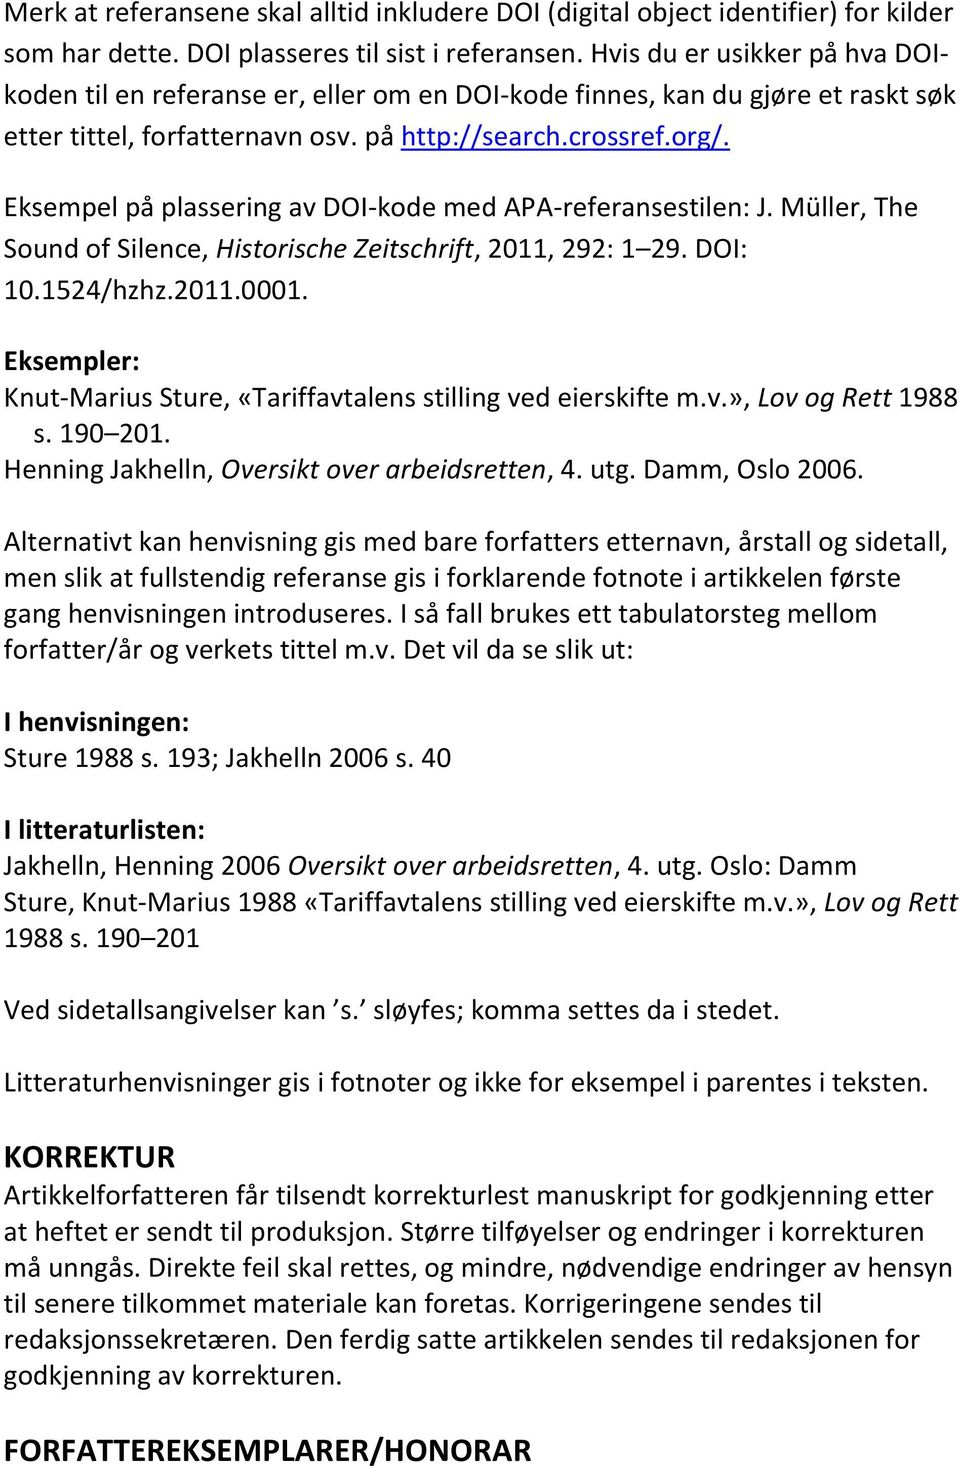 Eksempel på plassering av DOI-kode med APA-referansestilen: J. Müller, The Sound of Silence, Historische Zeitschrift, 2011, 292: 1 29. DOI: 10.1524/hzhz.2011.0001.